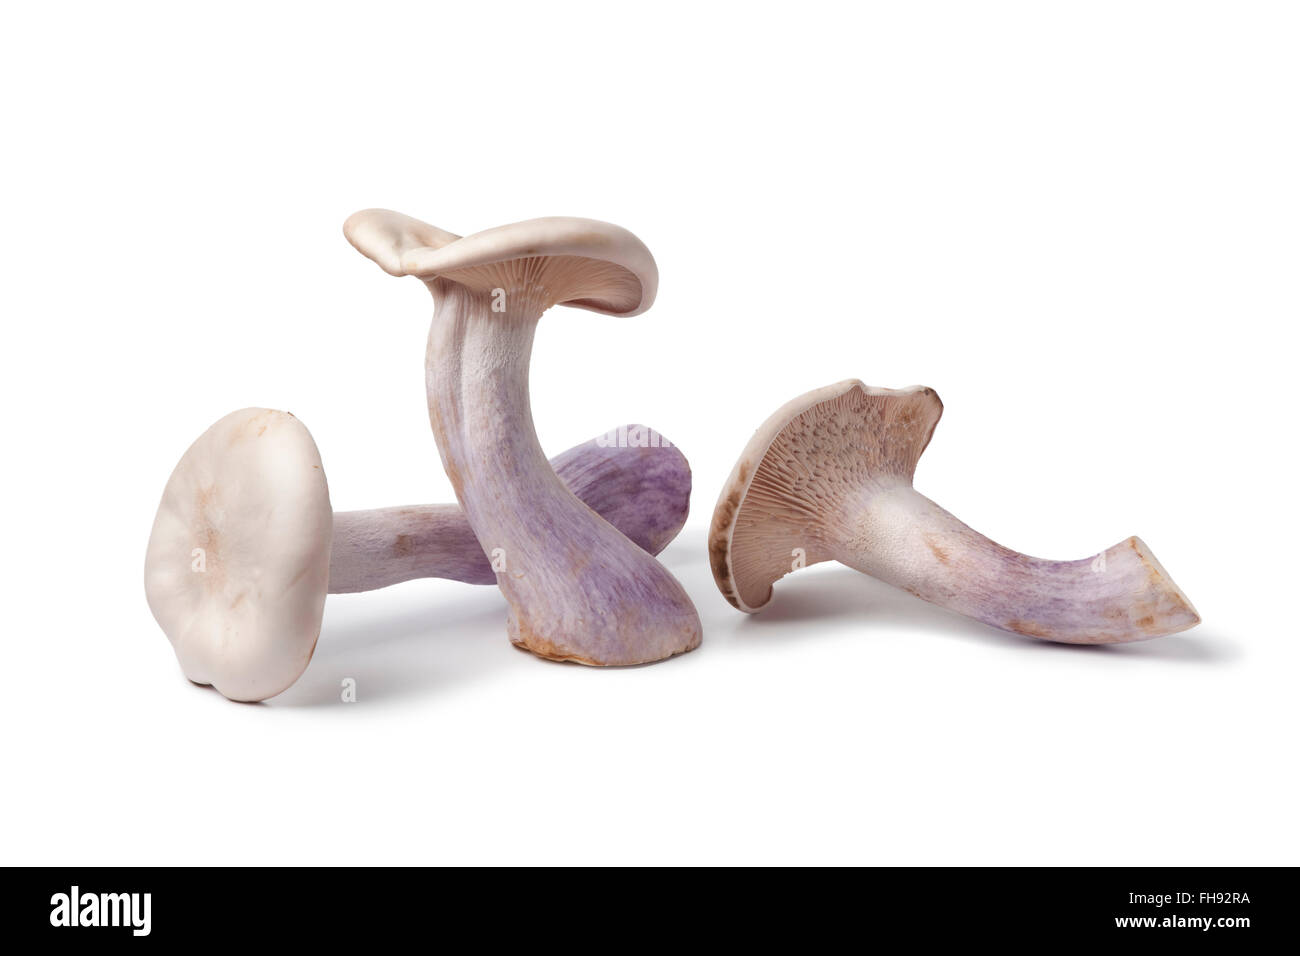 Fresh raw Pied bleu edible mushrooms on white background Stock Photo